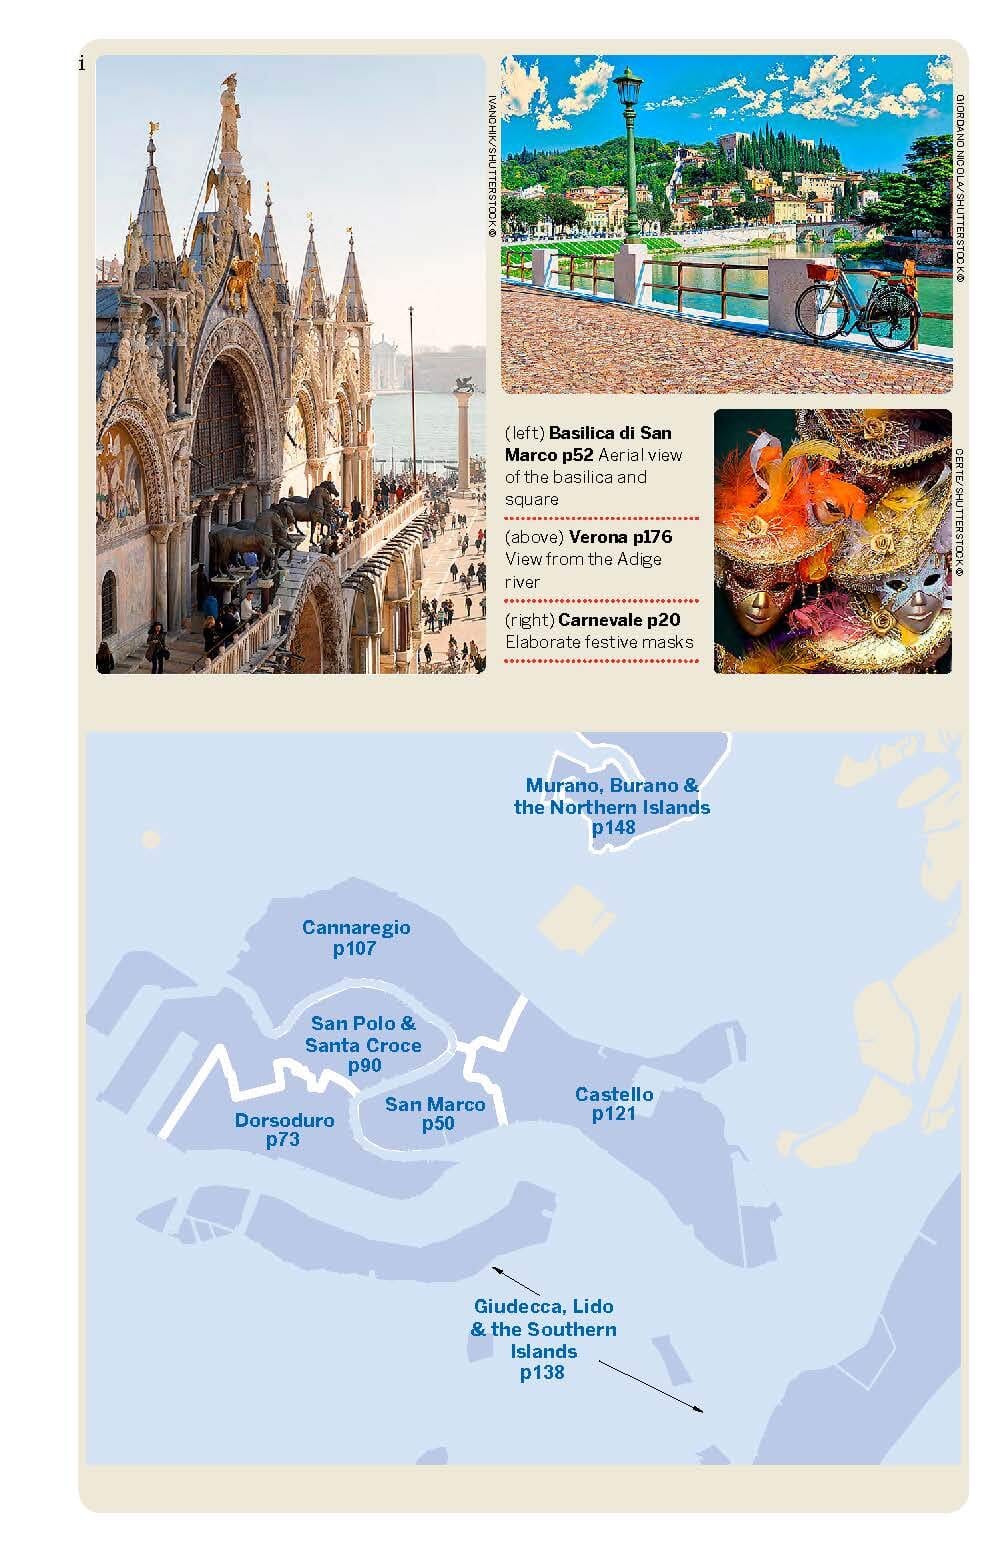 Guide de voyage (en anglais) - Venice & the Veneto | Lonely Planet guide de voyage Lonely Planet EN 